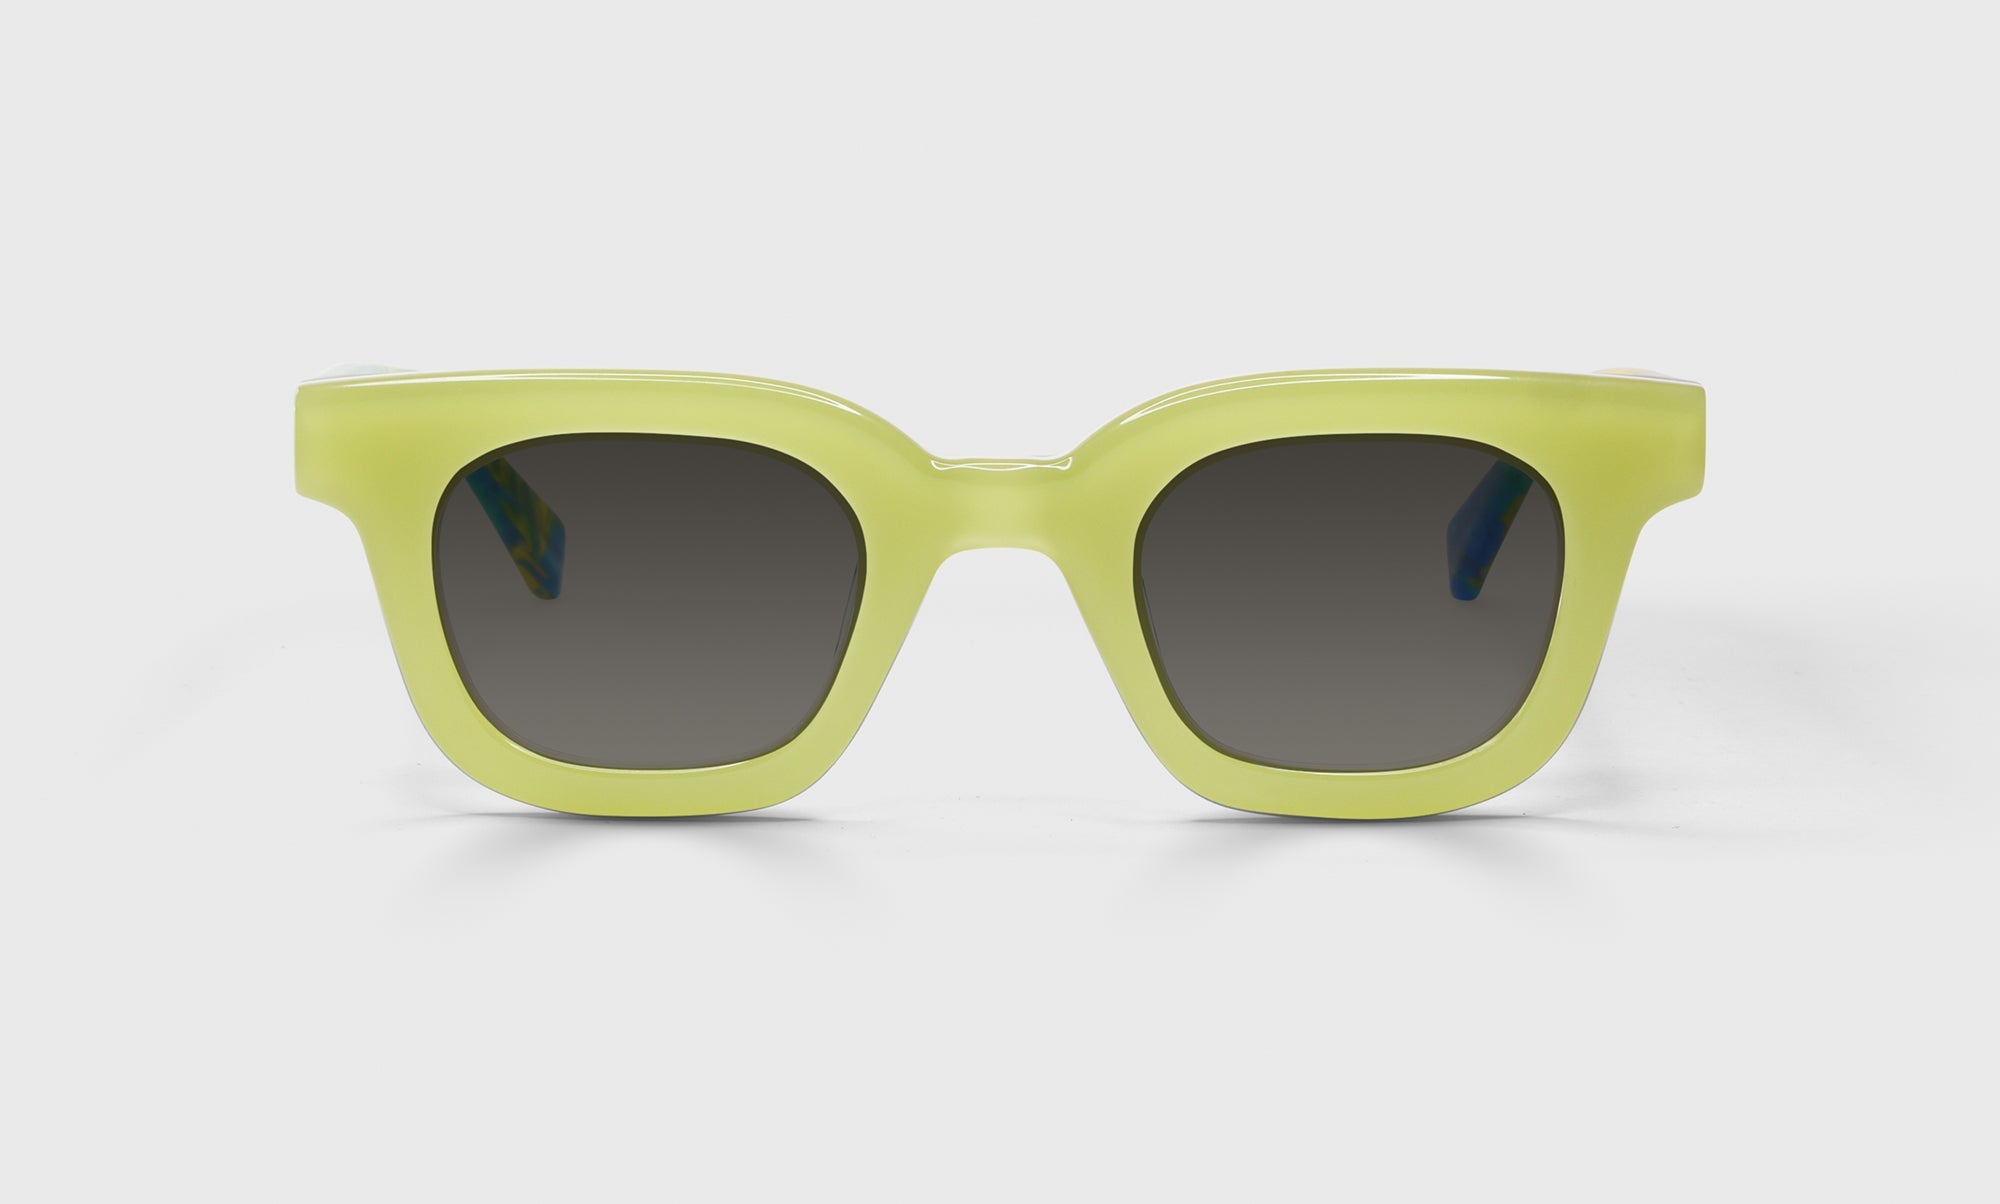 17-rs, 17-pg | Anomaly premium eyebobs Average Square polarized reading sunglasses